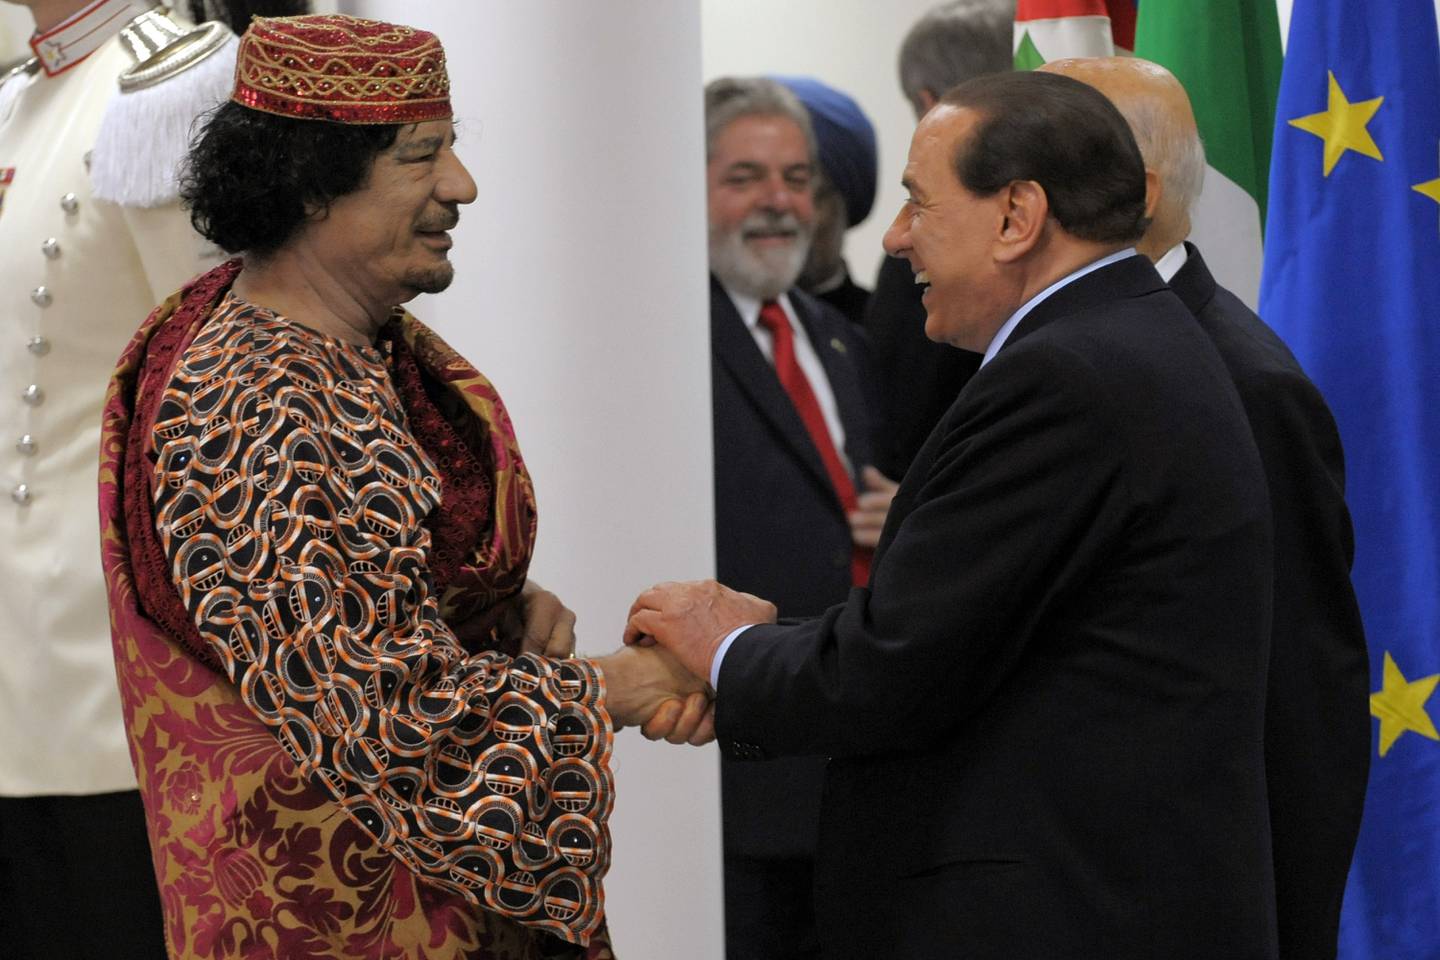 Libyas leder Muammar Gaddafi, til venstre, møtte Italias statsminister Silvio Berlusconi under en middag på G8-møtet i L'Aquila i Italia i 2009.